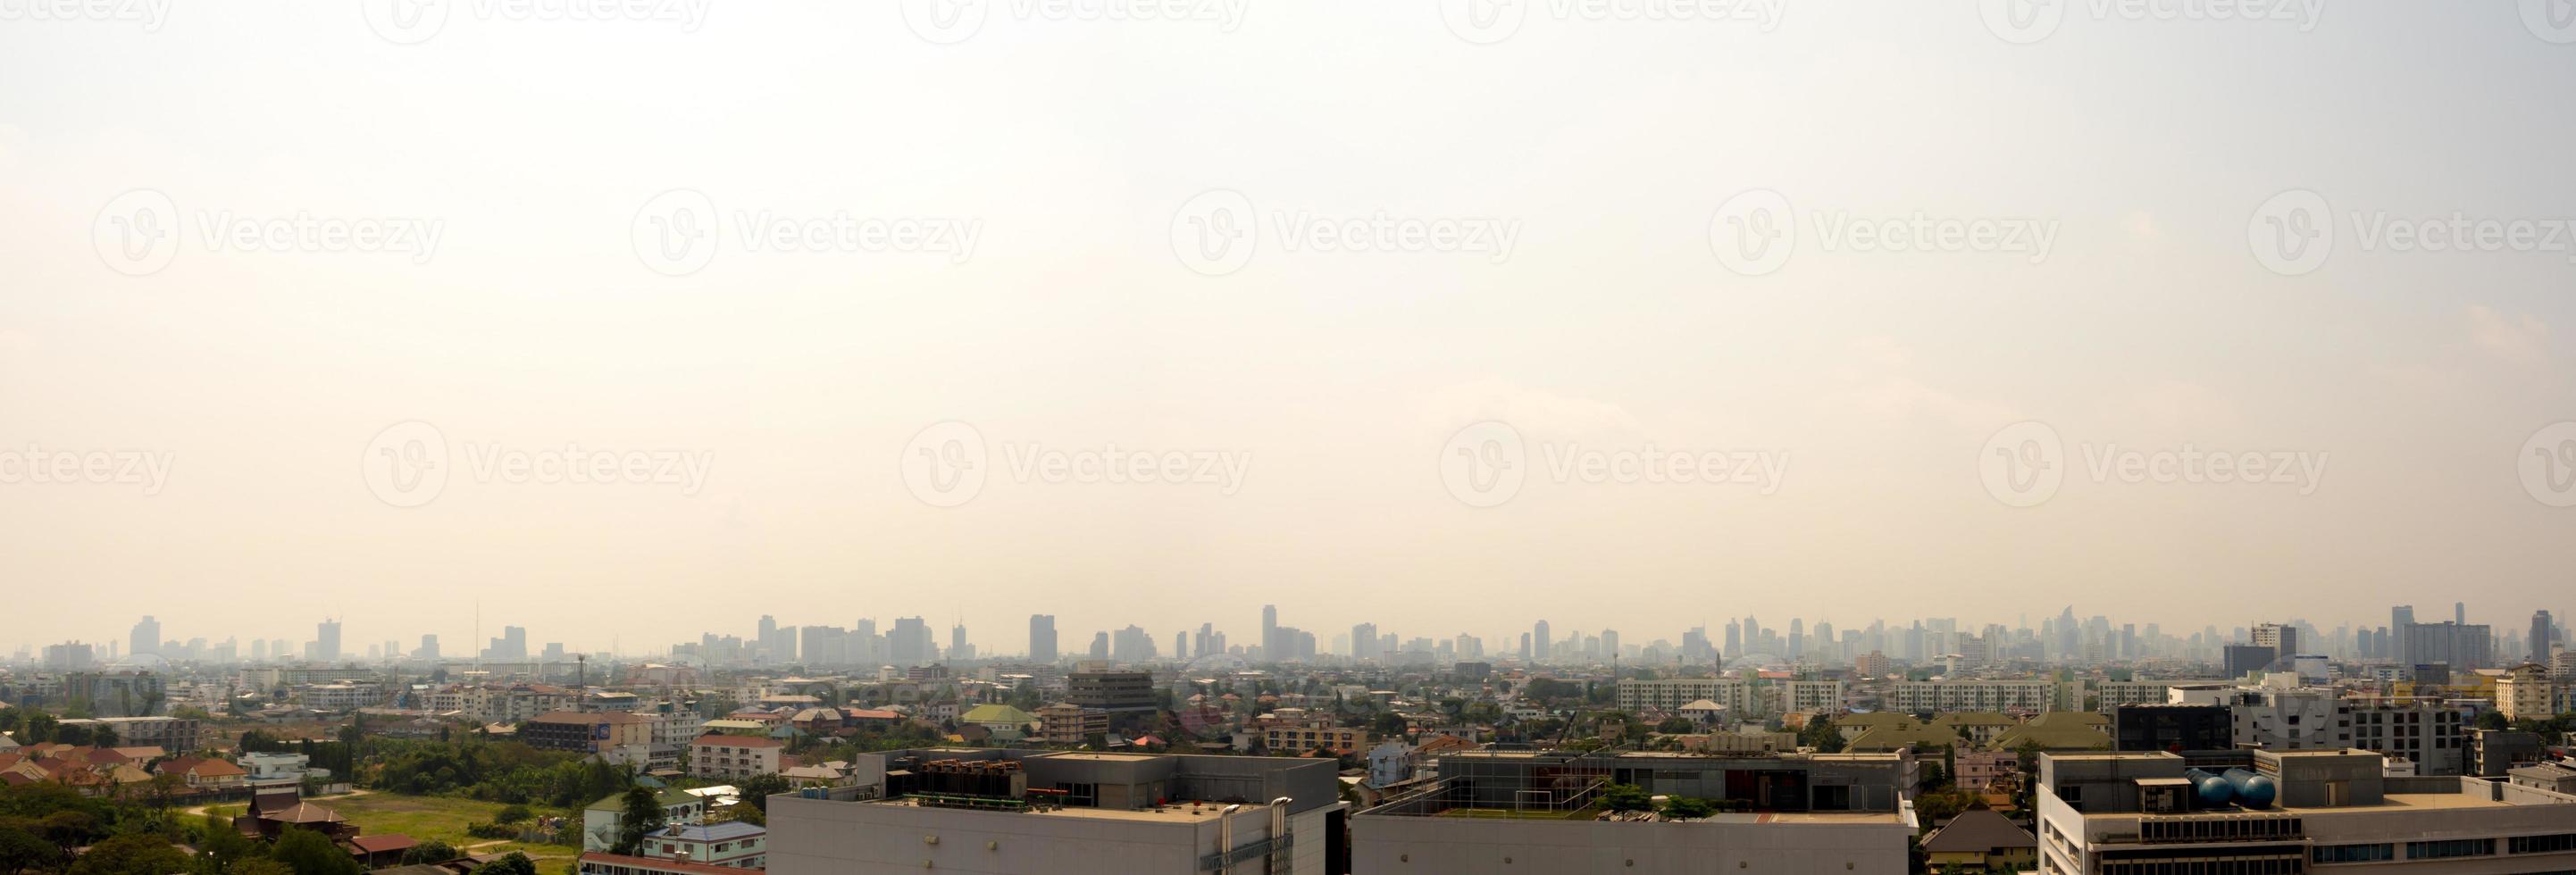 stadtbild urban skyline im nebel oder smog. breites und hohes bild der stadt bangkok im smog foto